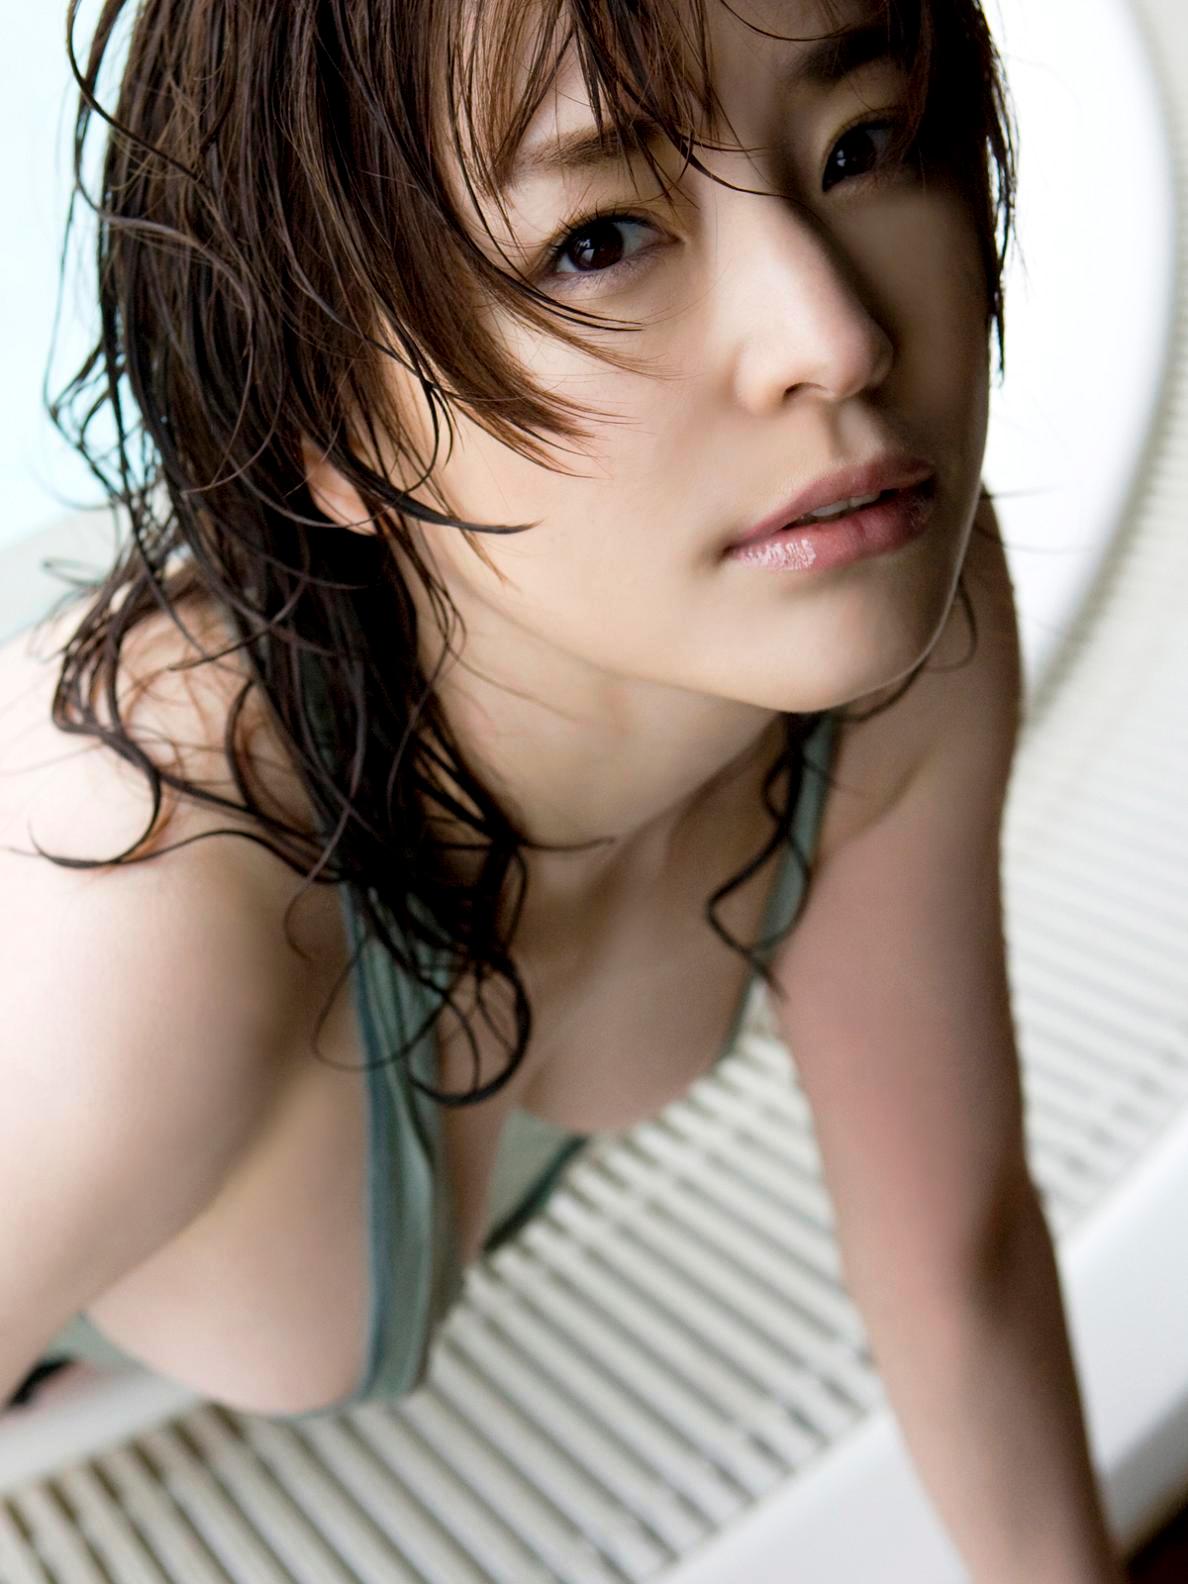 Former-AV-idol-Haruka-Nanami-by-ohfree.net-15 Japanese actress, a former AV idol Haruka Nanami 名波 はるか nude sexy 